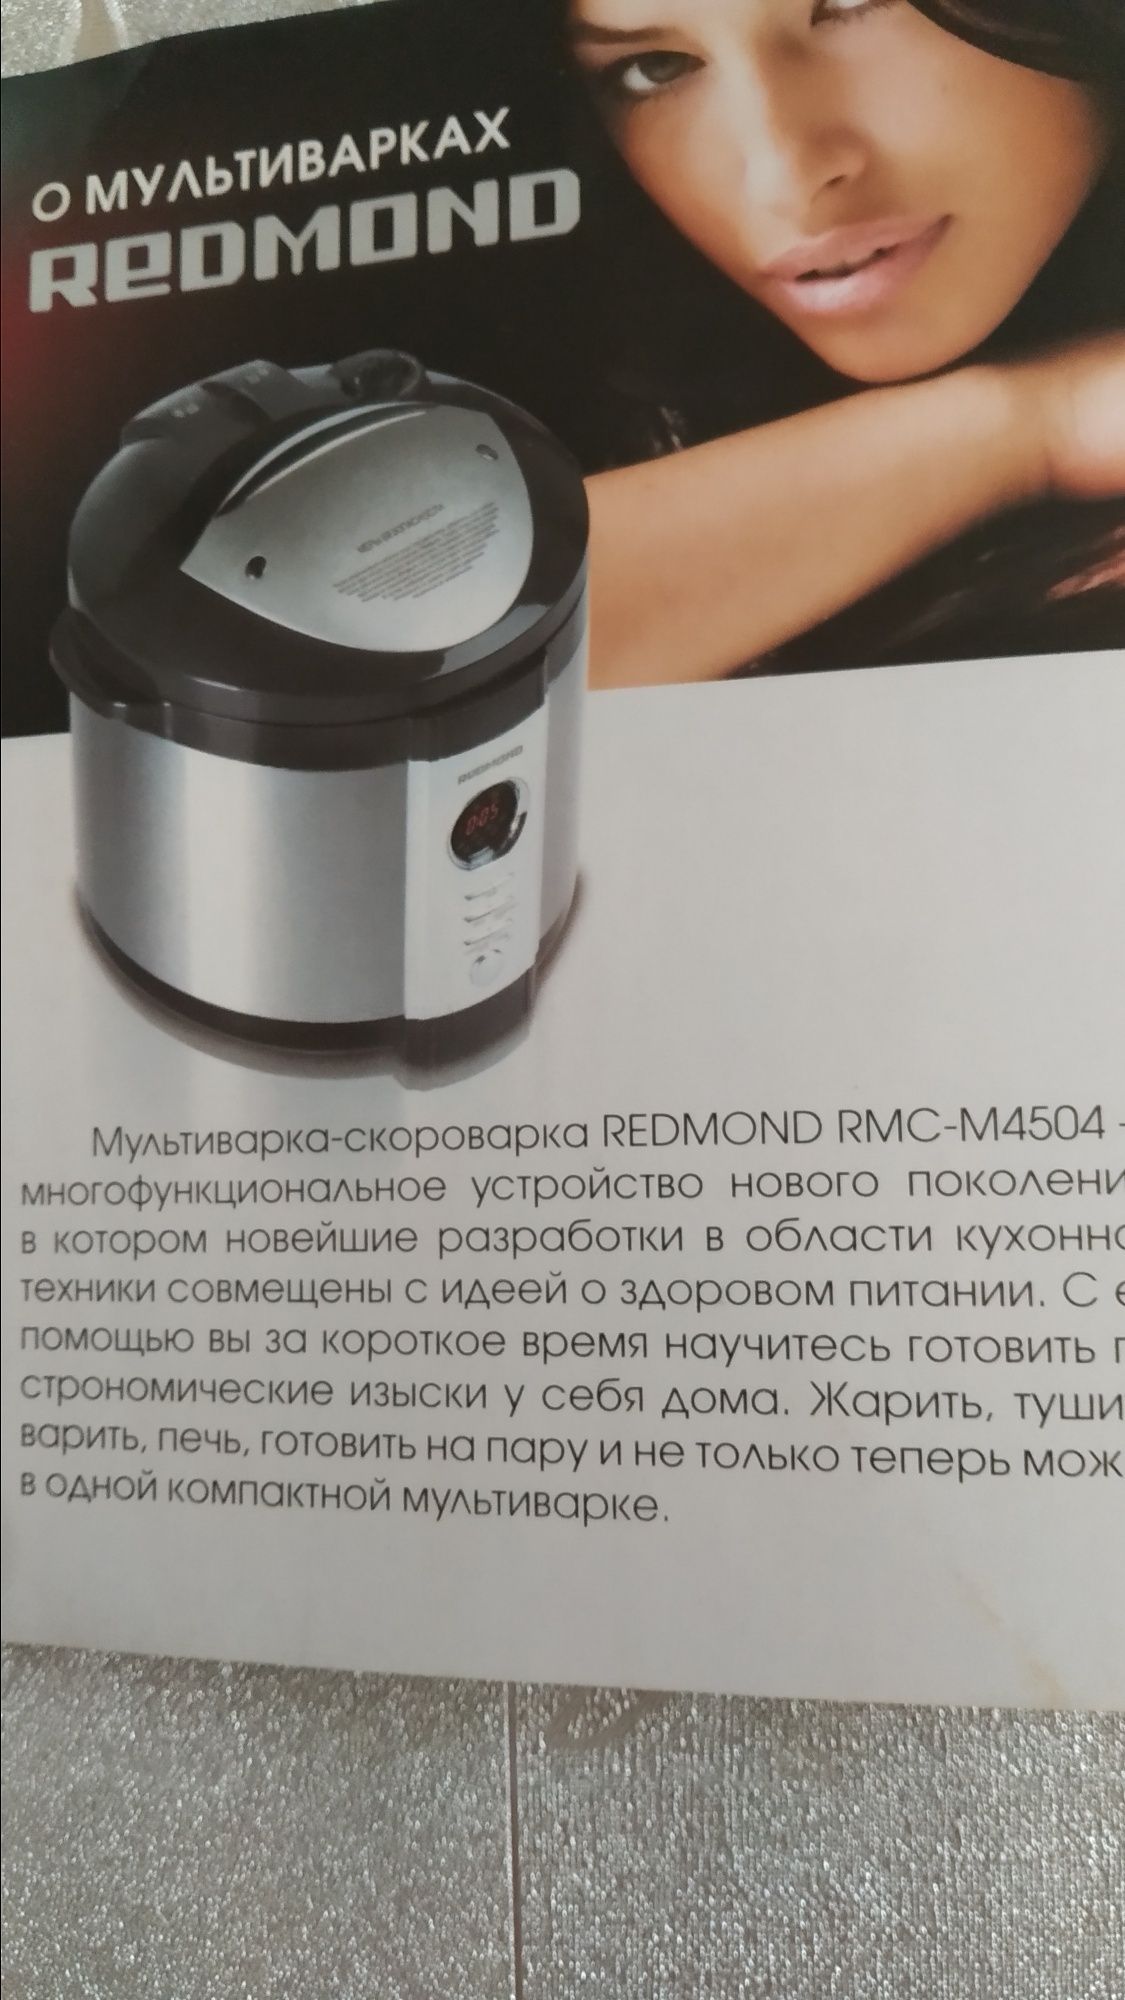 Продам мультиварку- скороварка Redmond RMC-M4504